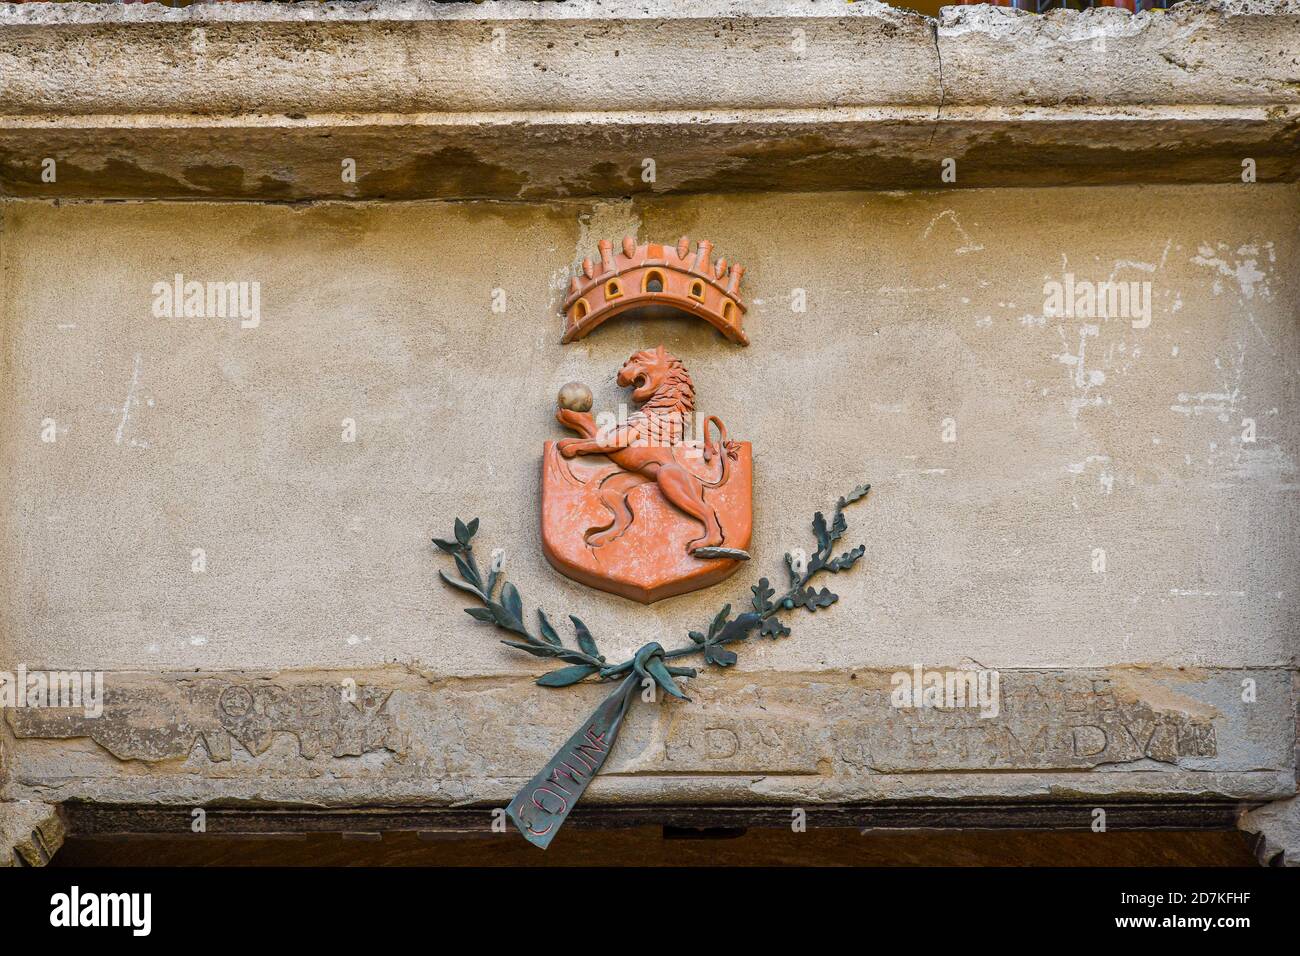 Primo piano dello stemma della città medievale di San Gimignano, raffigurante un leone rampante, sulla façade del municipio, Siena, Toscana, Italia Foto Stock